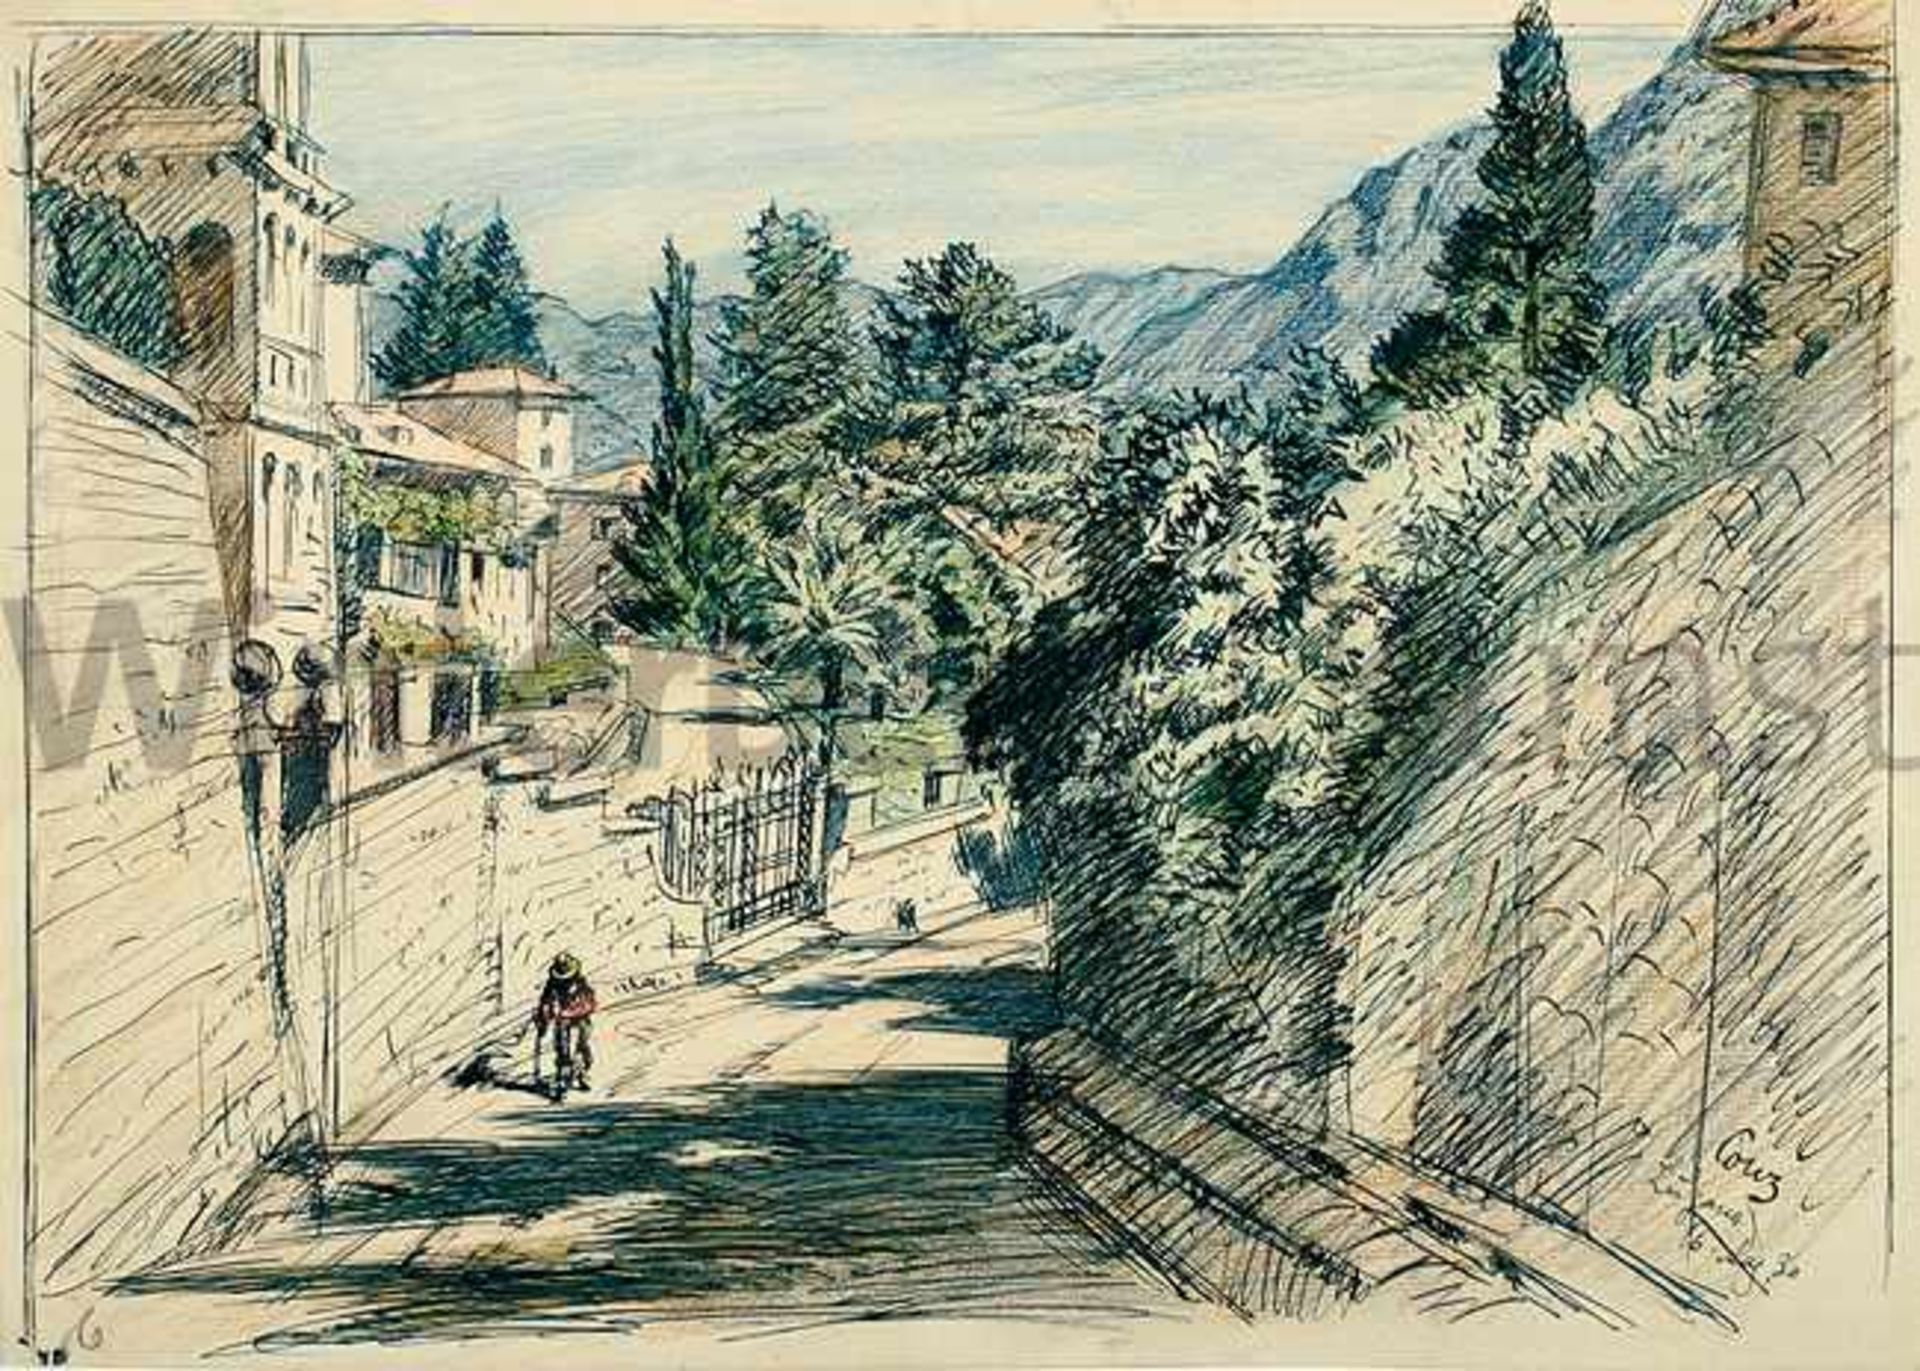 WALTER CONZ Stuttgart 1872 - 1947 ÜberlingenVon Villen gesäumte Straße in Lugano. In Farbstift